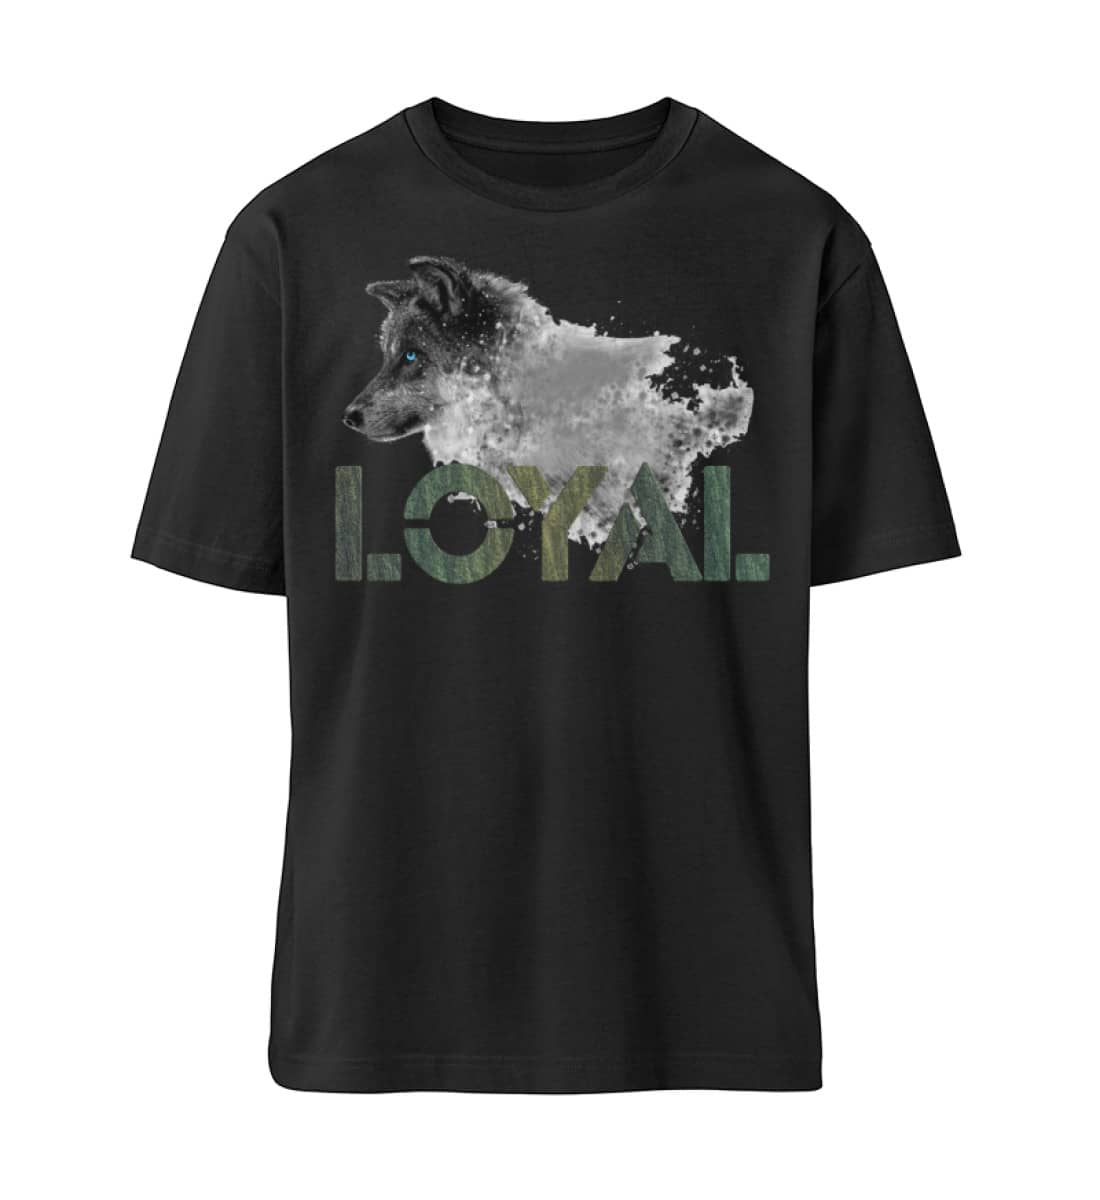 Loyal Wolf - Wood - Organic Oversized Shirt ST/ST-16